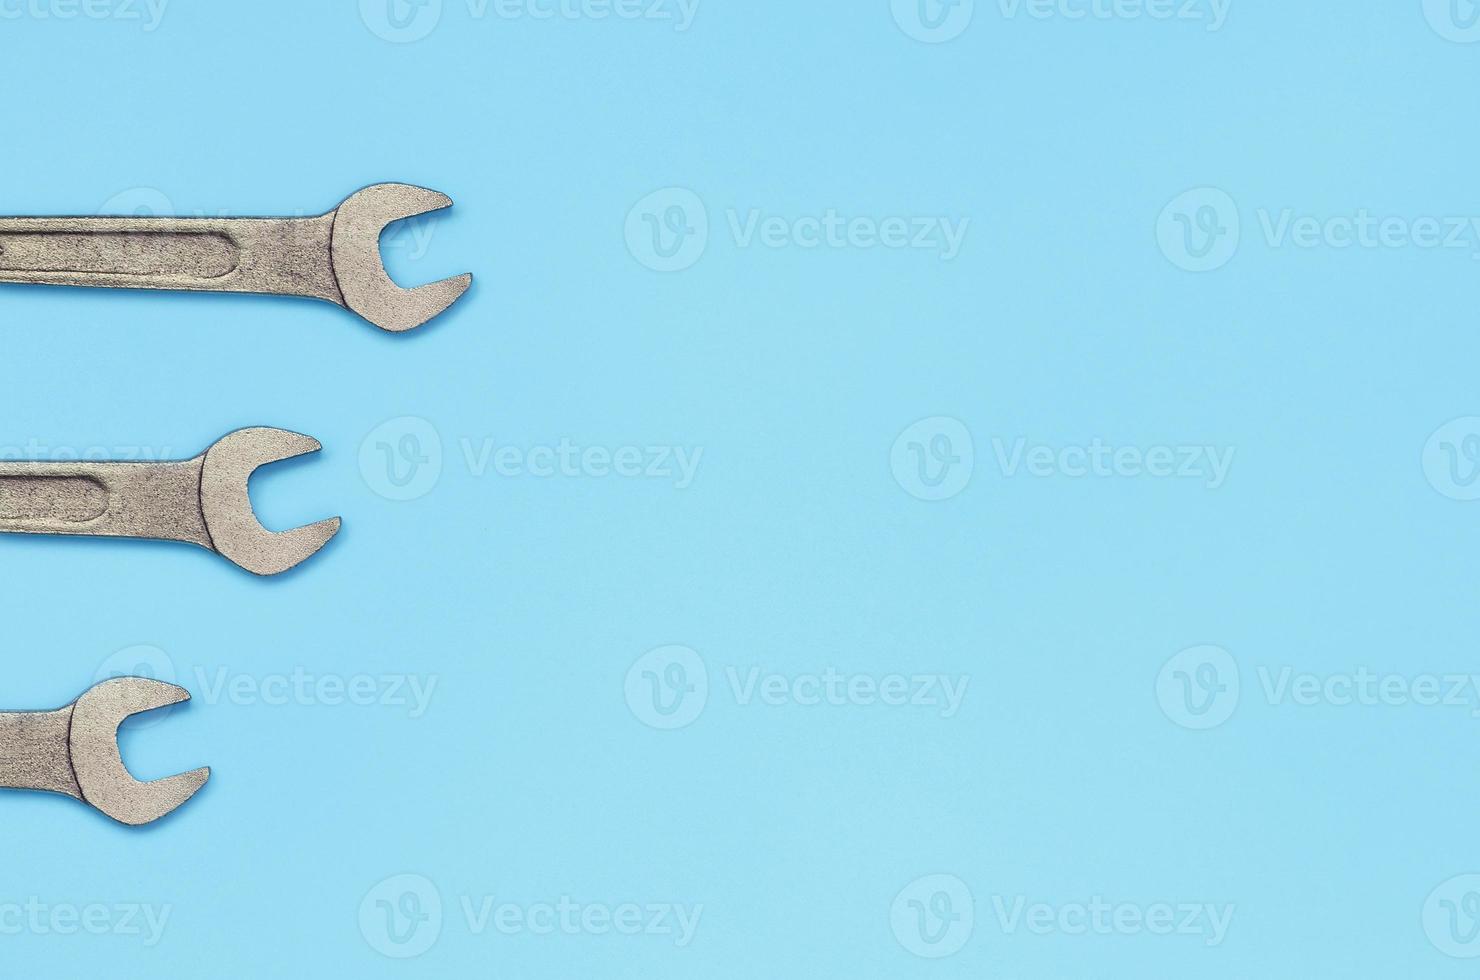 drei metallische schlüssel liegen auf texturhintergrund von modepastellblauem farbpapier foto